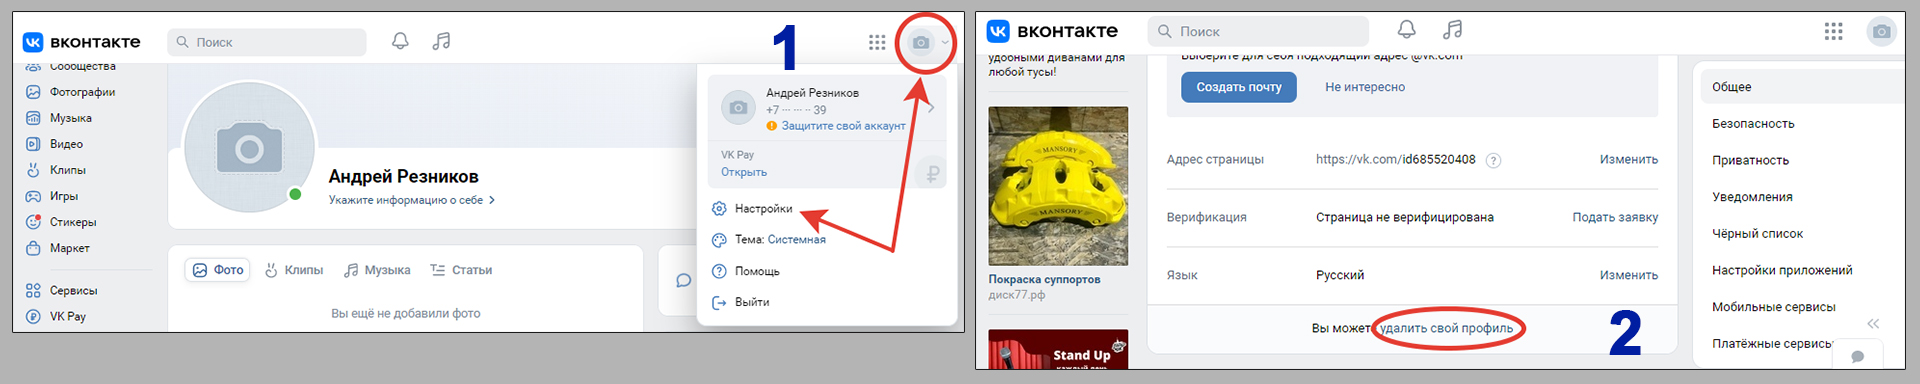 Удаление профиля ВКонтакте с компьютера через меню настроек.